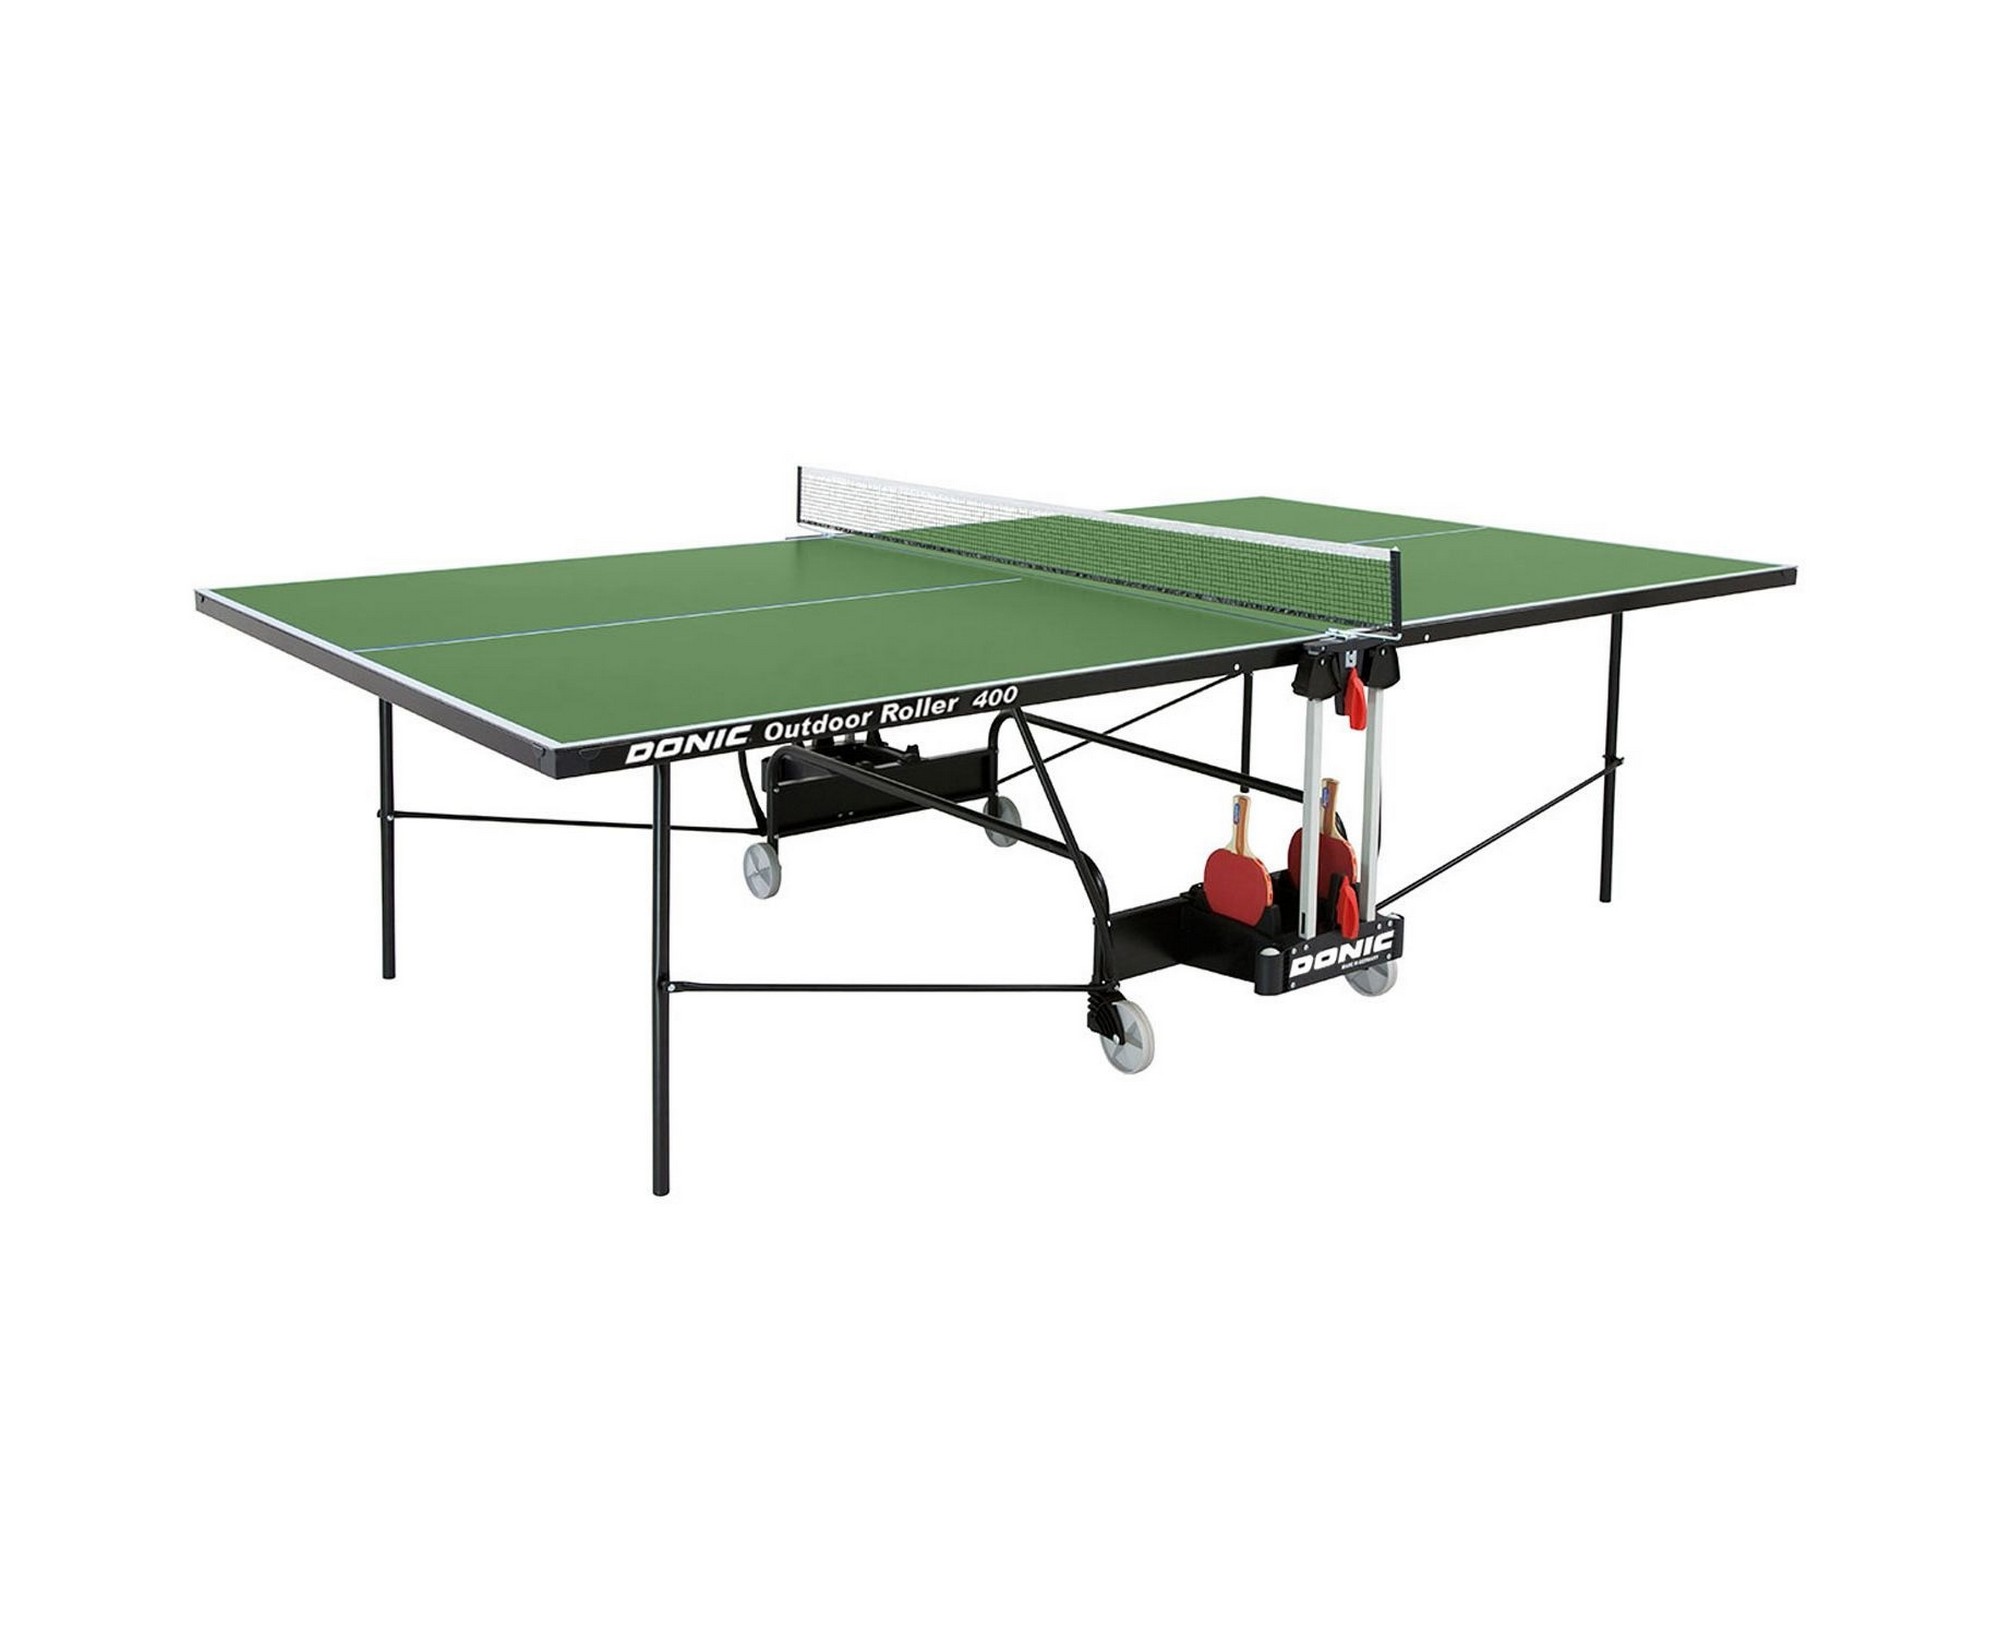 Теннисный стол Donic Outdoor Roller 400 230294-G зеленый 2000_1636